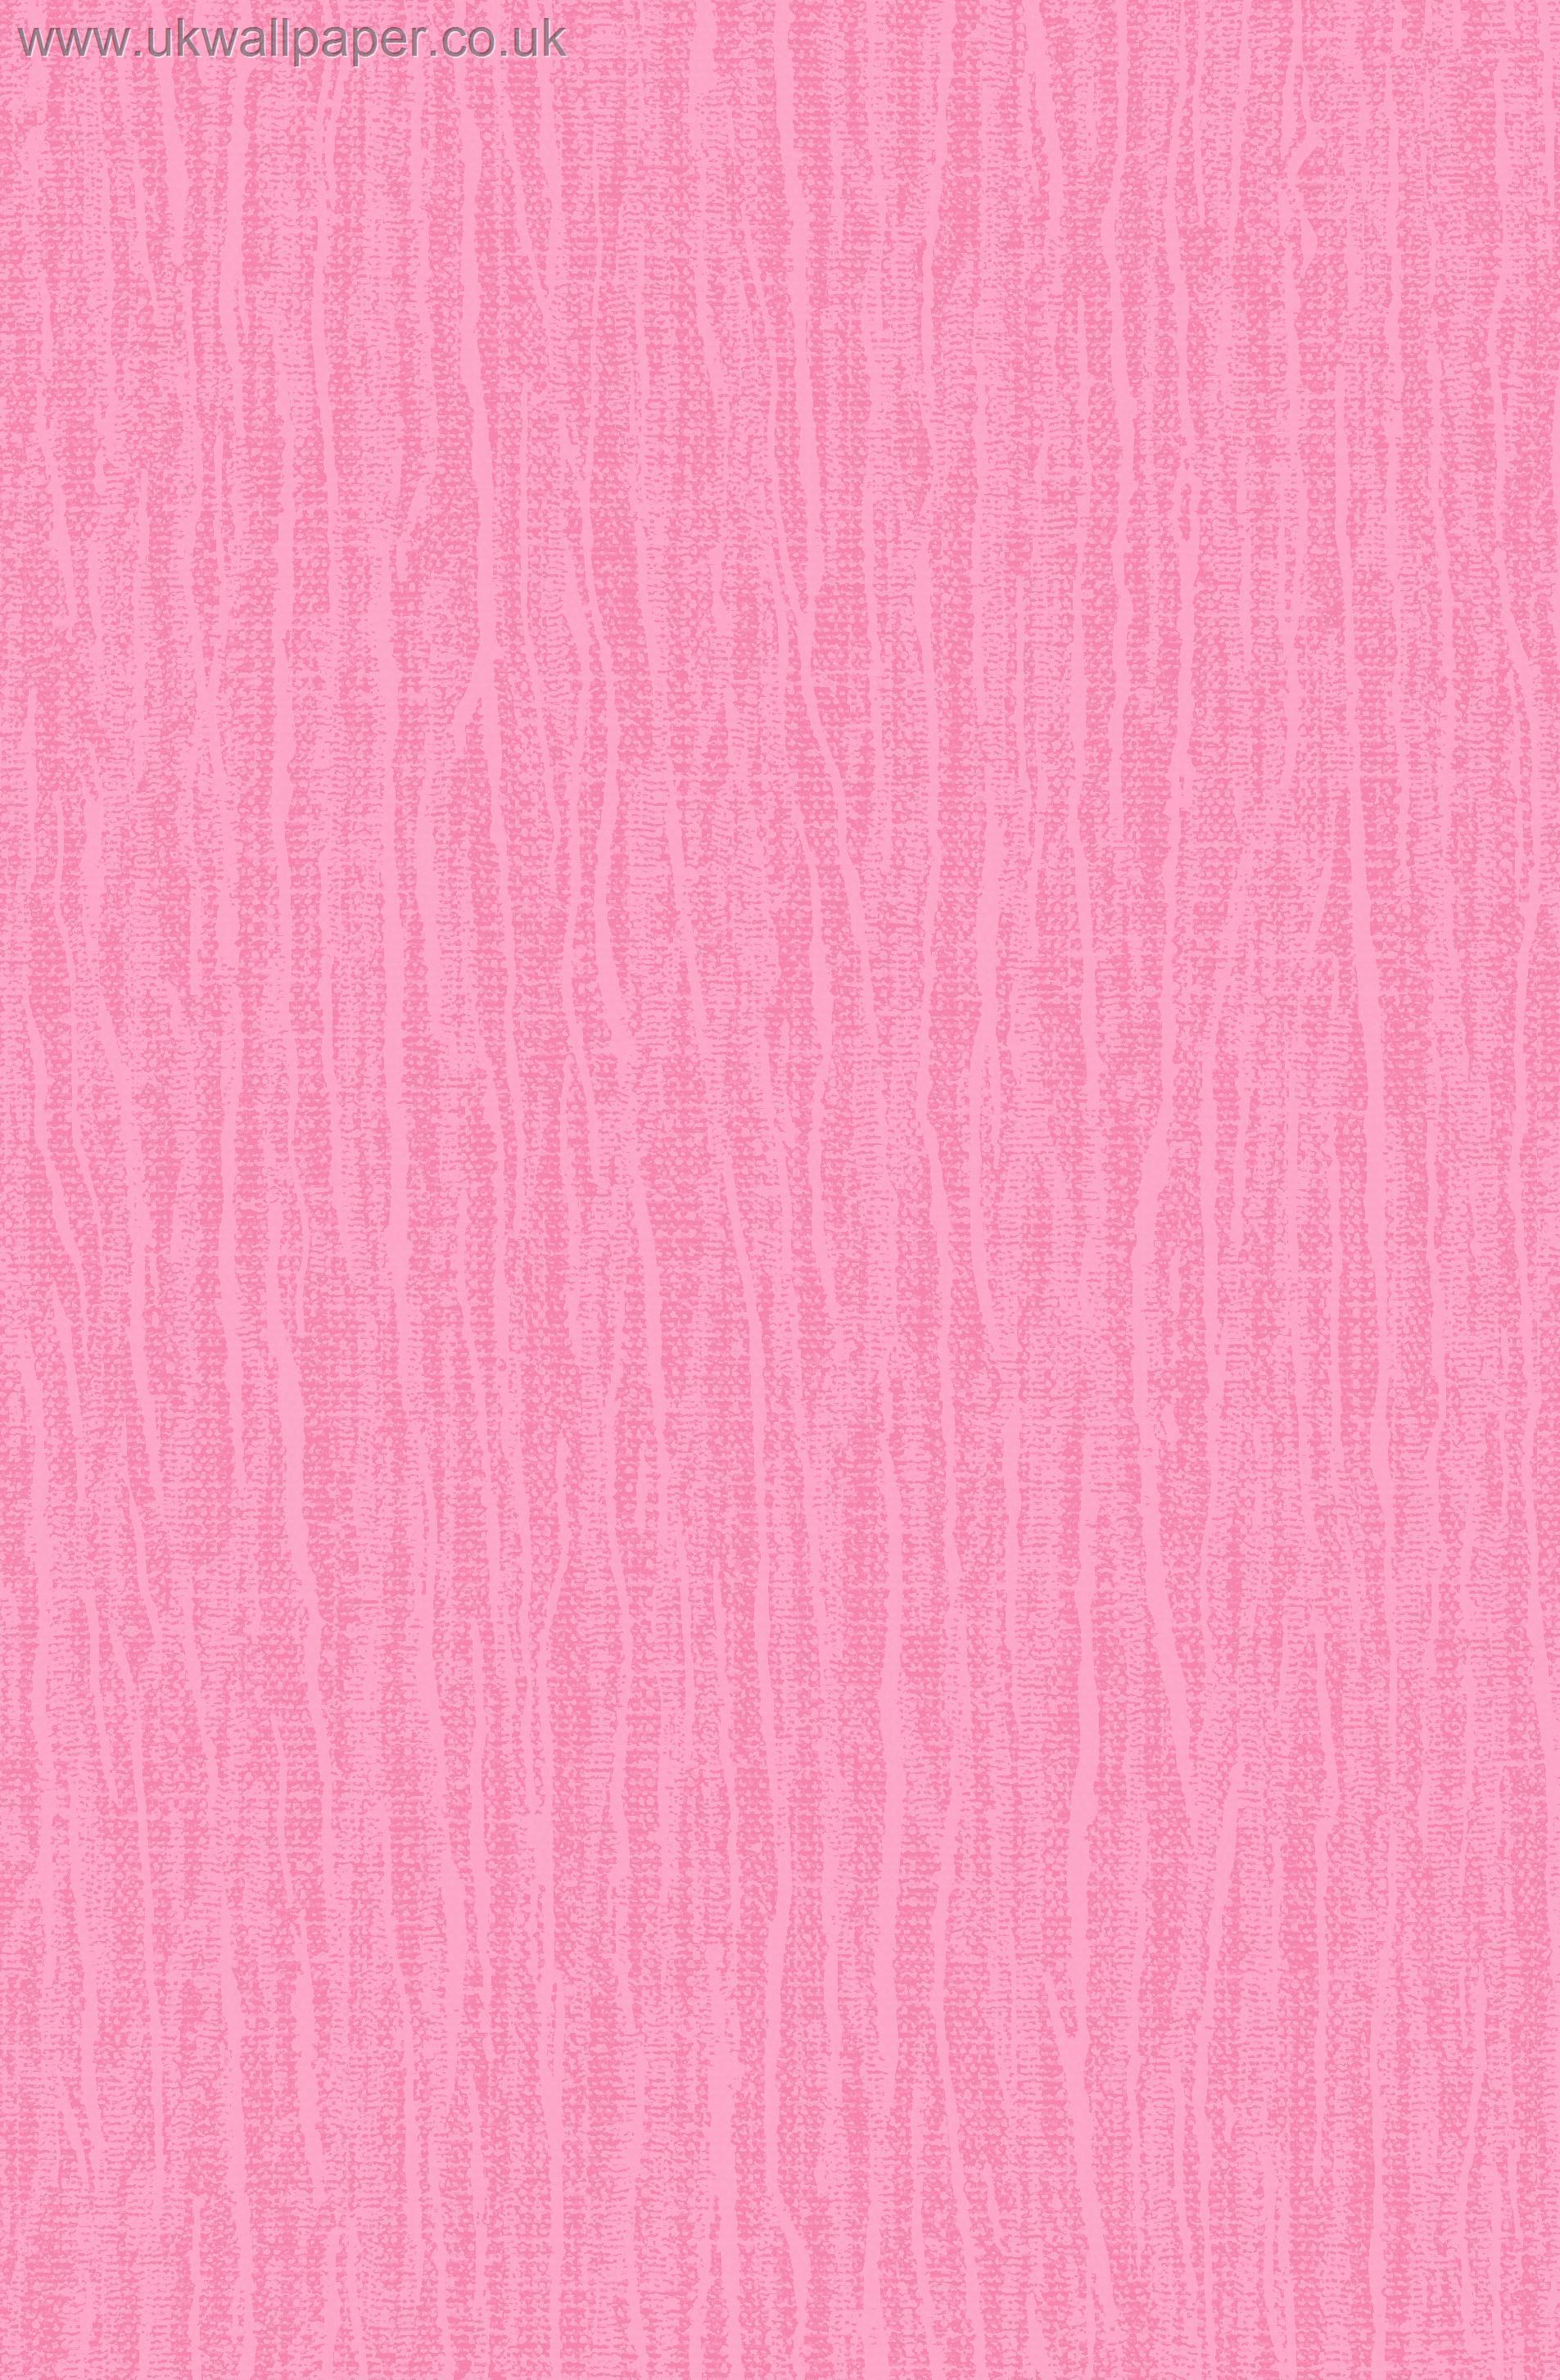 Victoria S Secret Wallpaper - Iphone 6 Victoria Secret - HD Wallpaper 